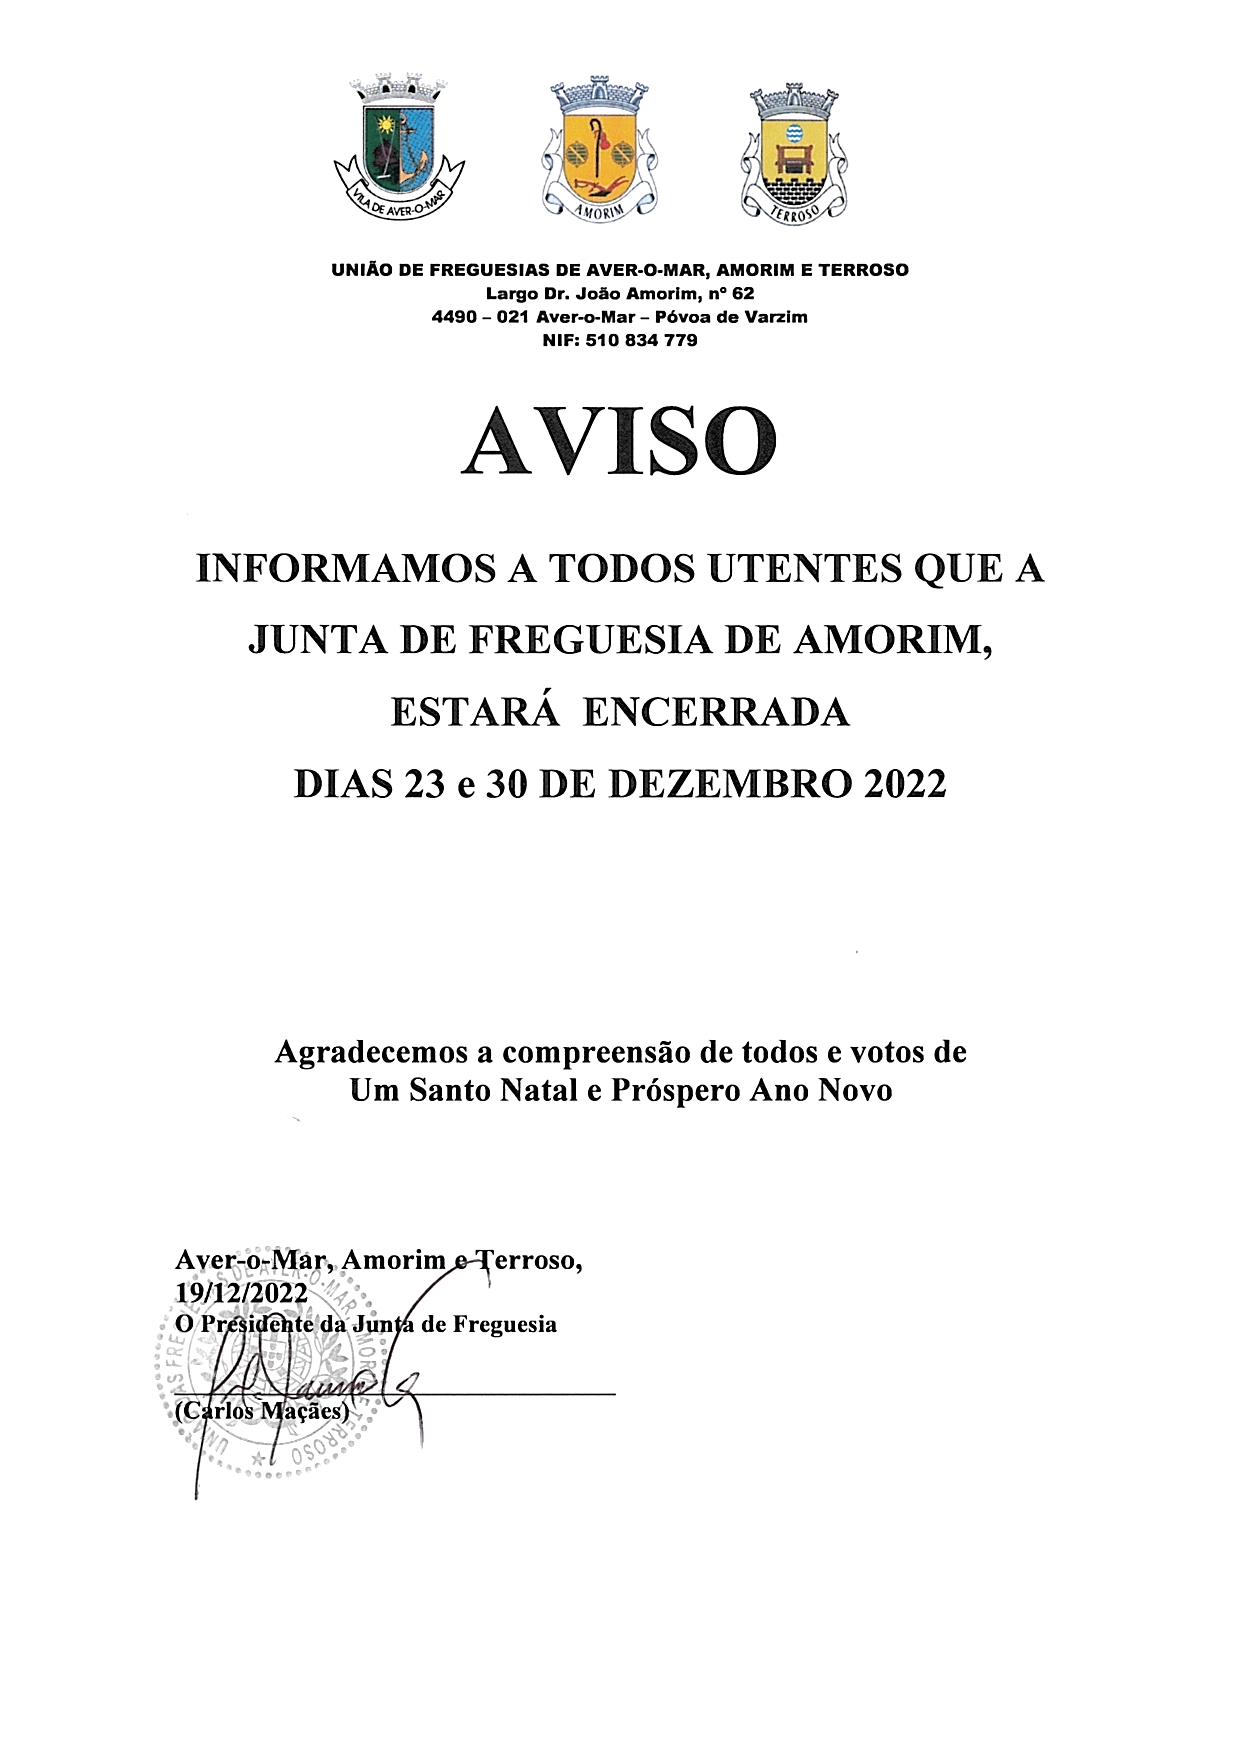 Encerramento da Junta de Freguesia de Amorim nos dias 23 e 30 Dezembro 2022